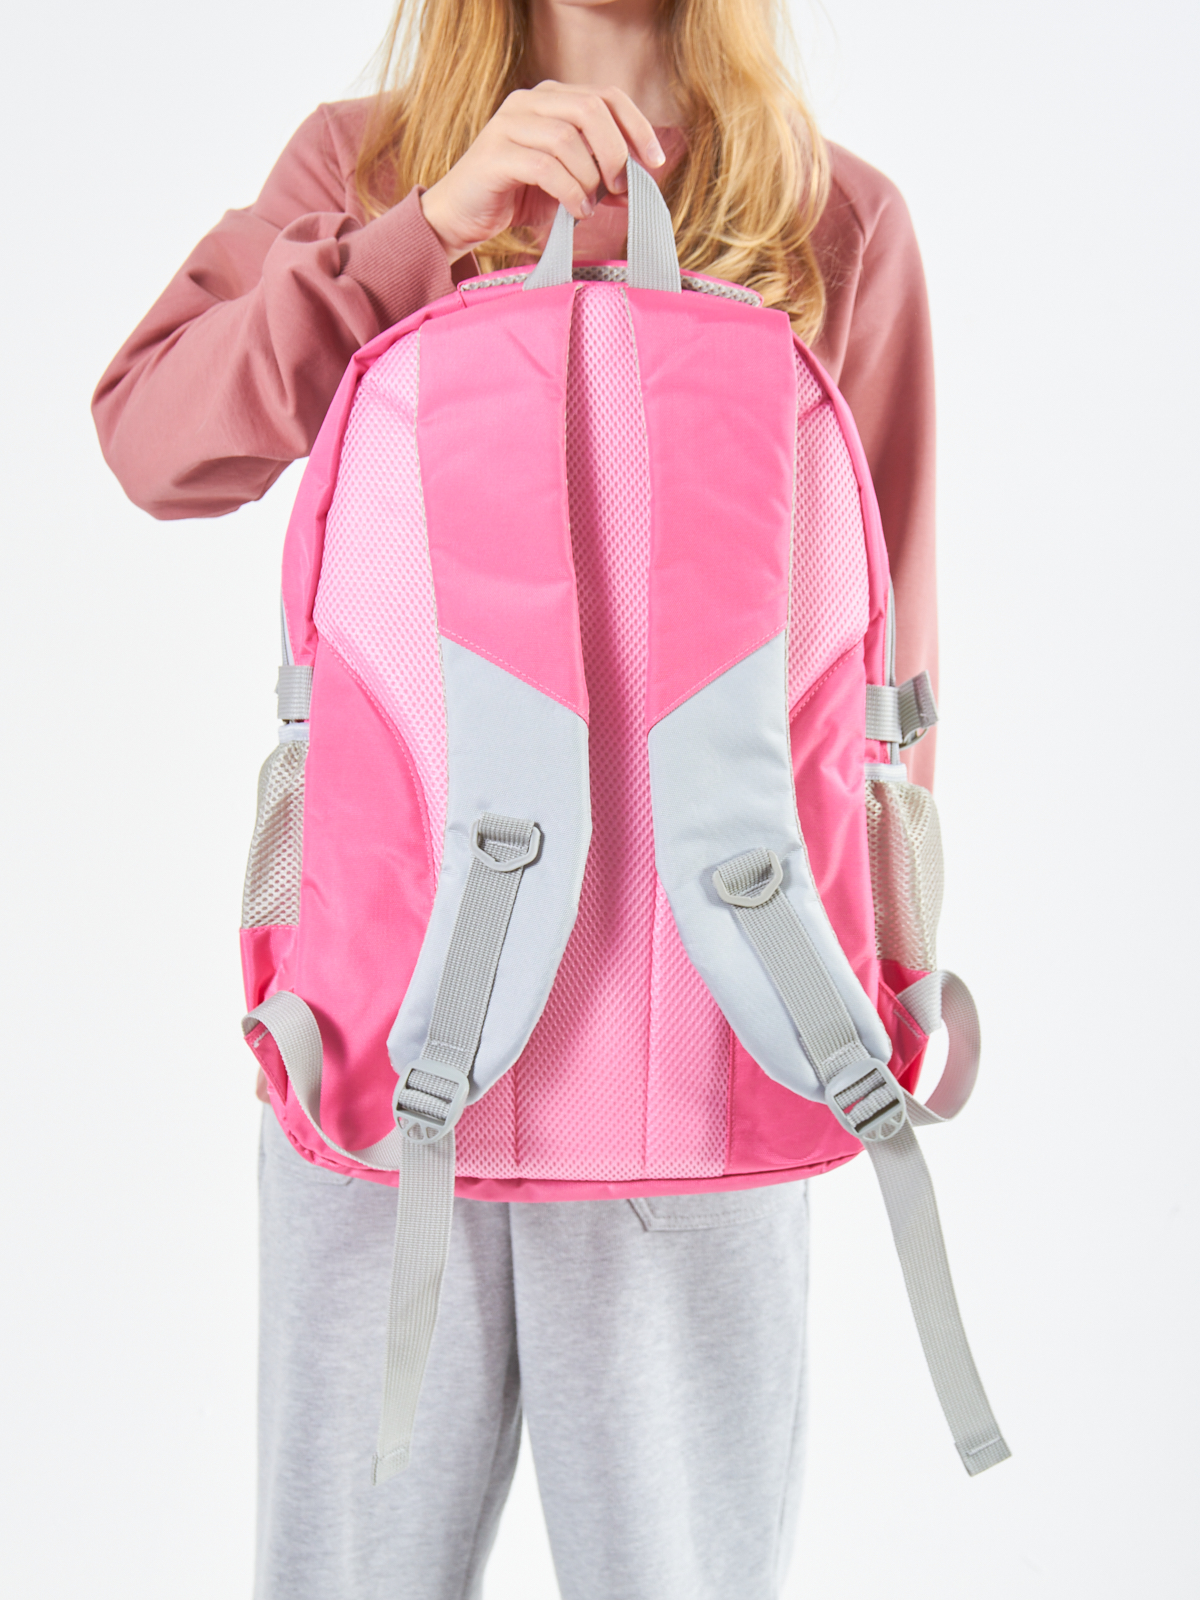 Рюкзак школьный Evoline большой розовый EVO-159-rose - фото 2